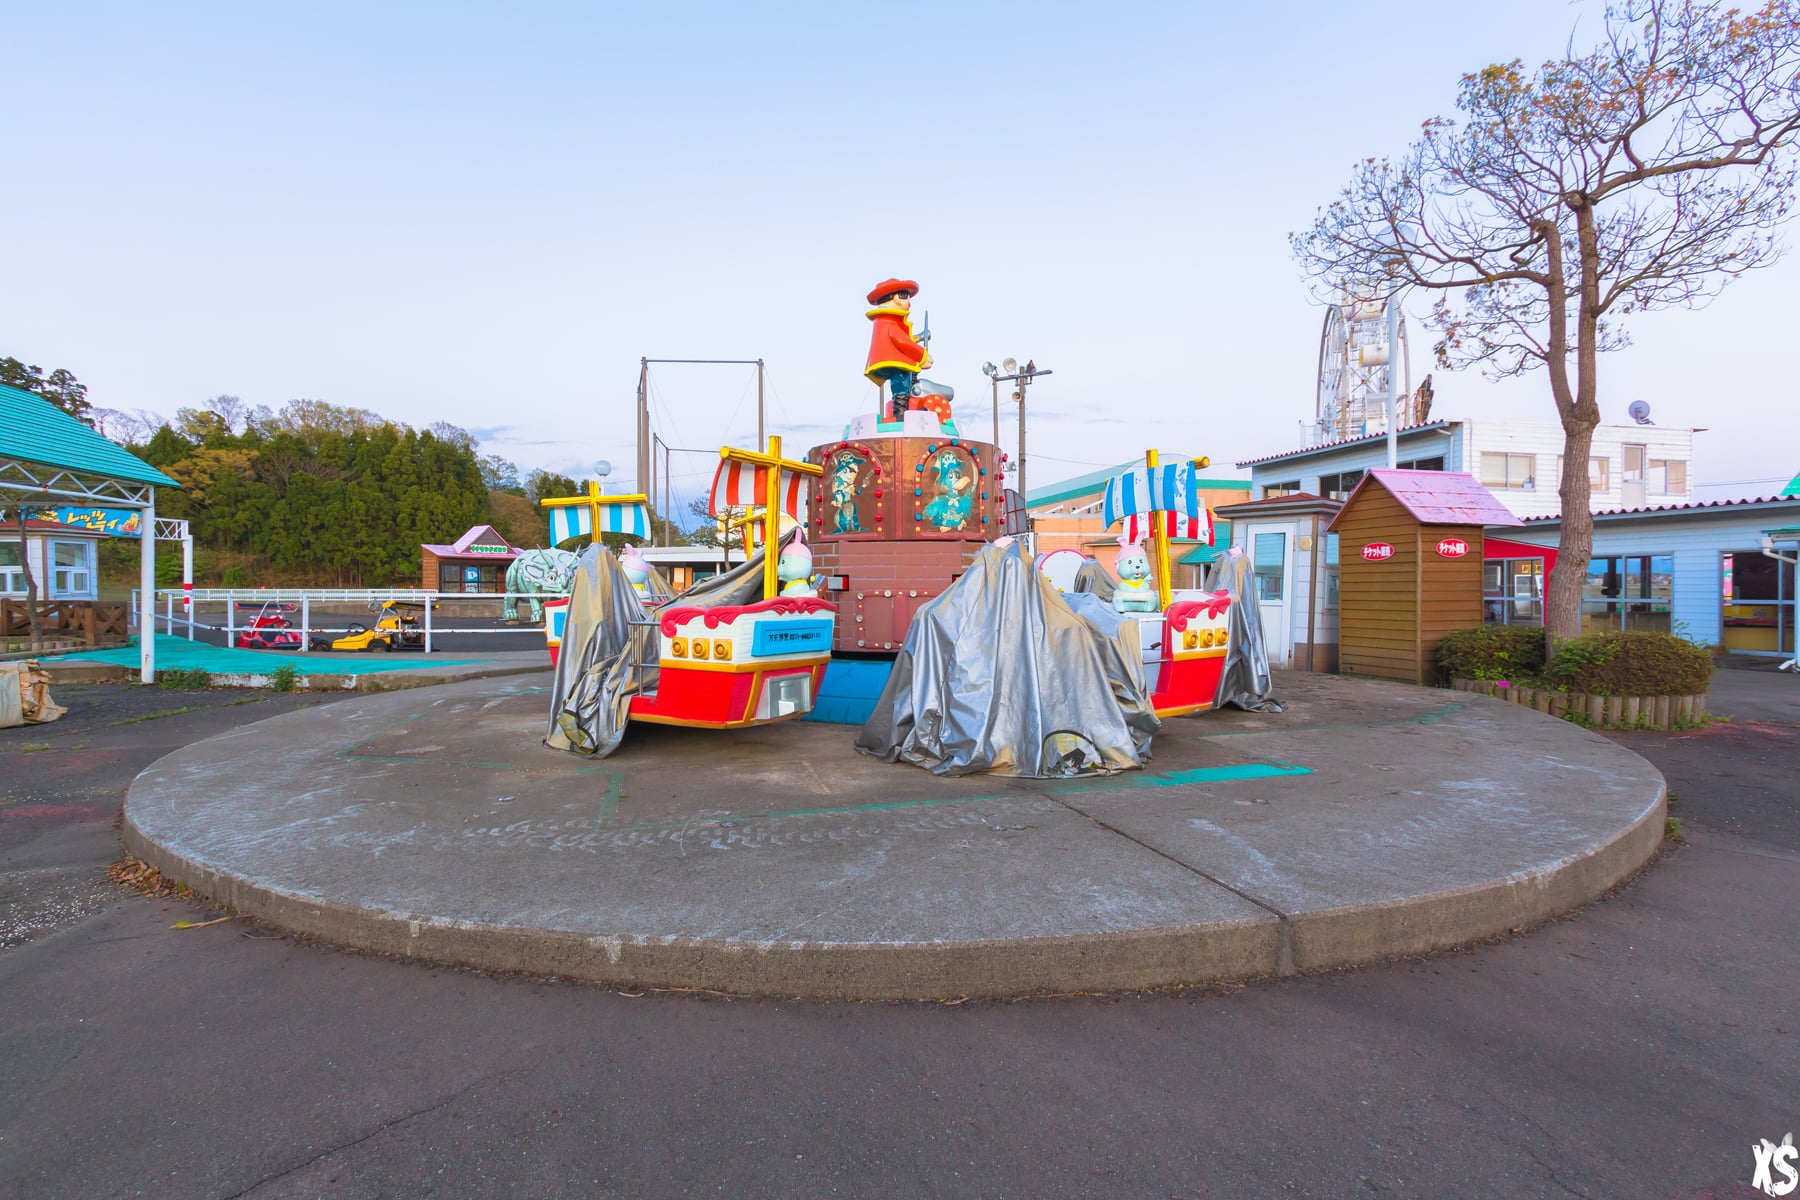 Wonderland - Parc d'attractions abandonnés au Japon : https://urbexsession.com/wonderland